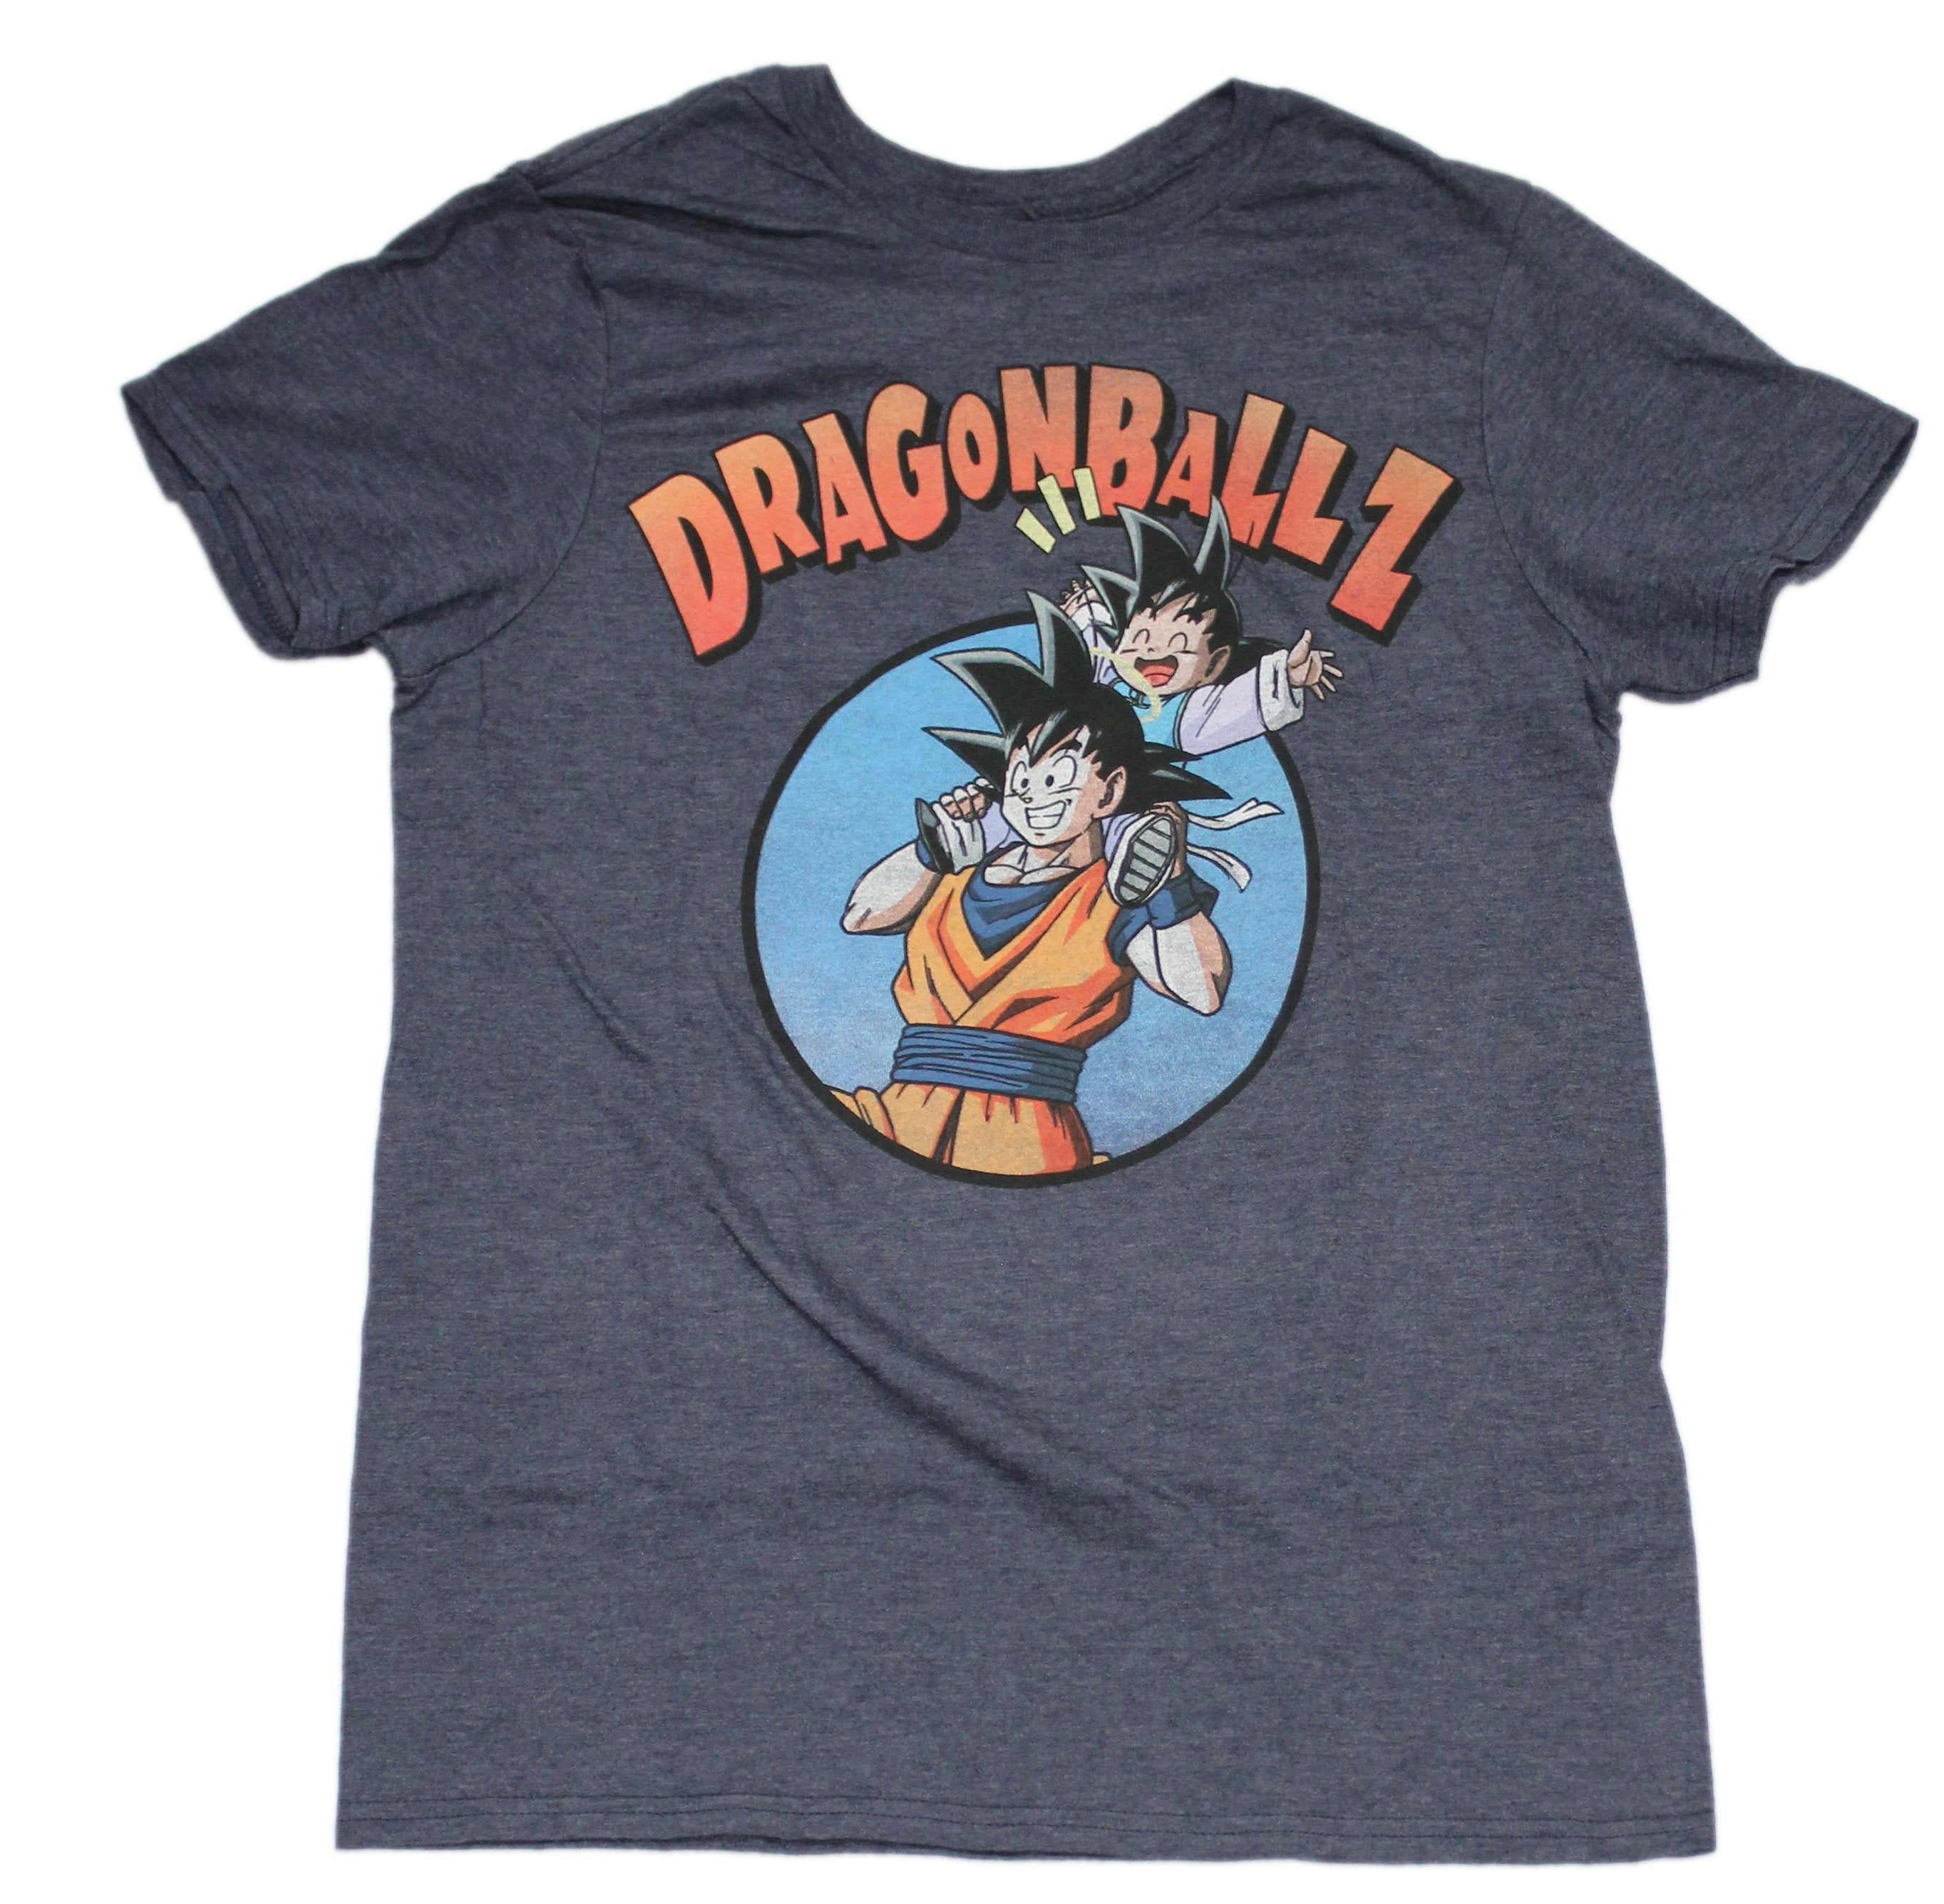 Dragon Ball Z Mens T-Shirt - Goku and Laughing Gohan Image